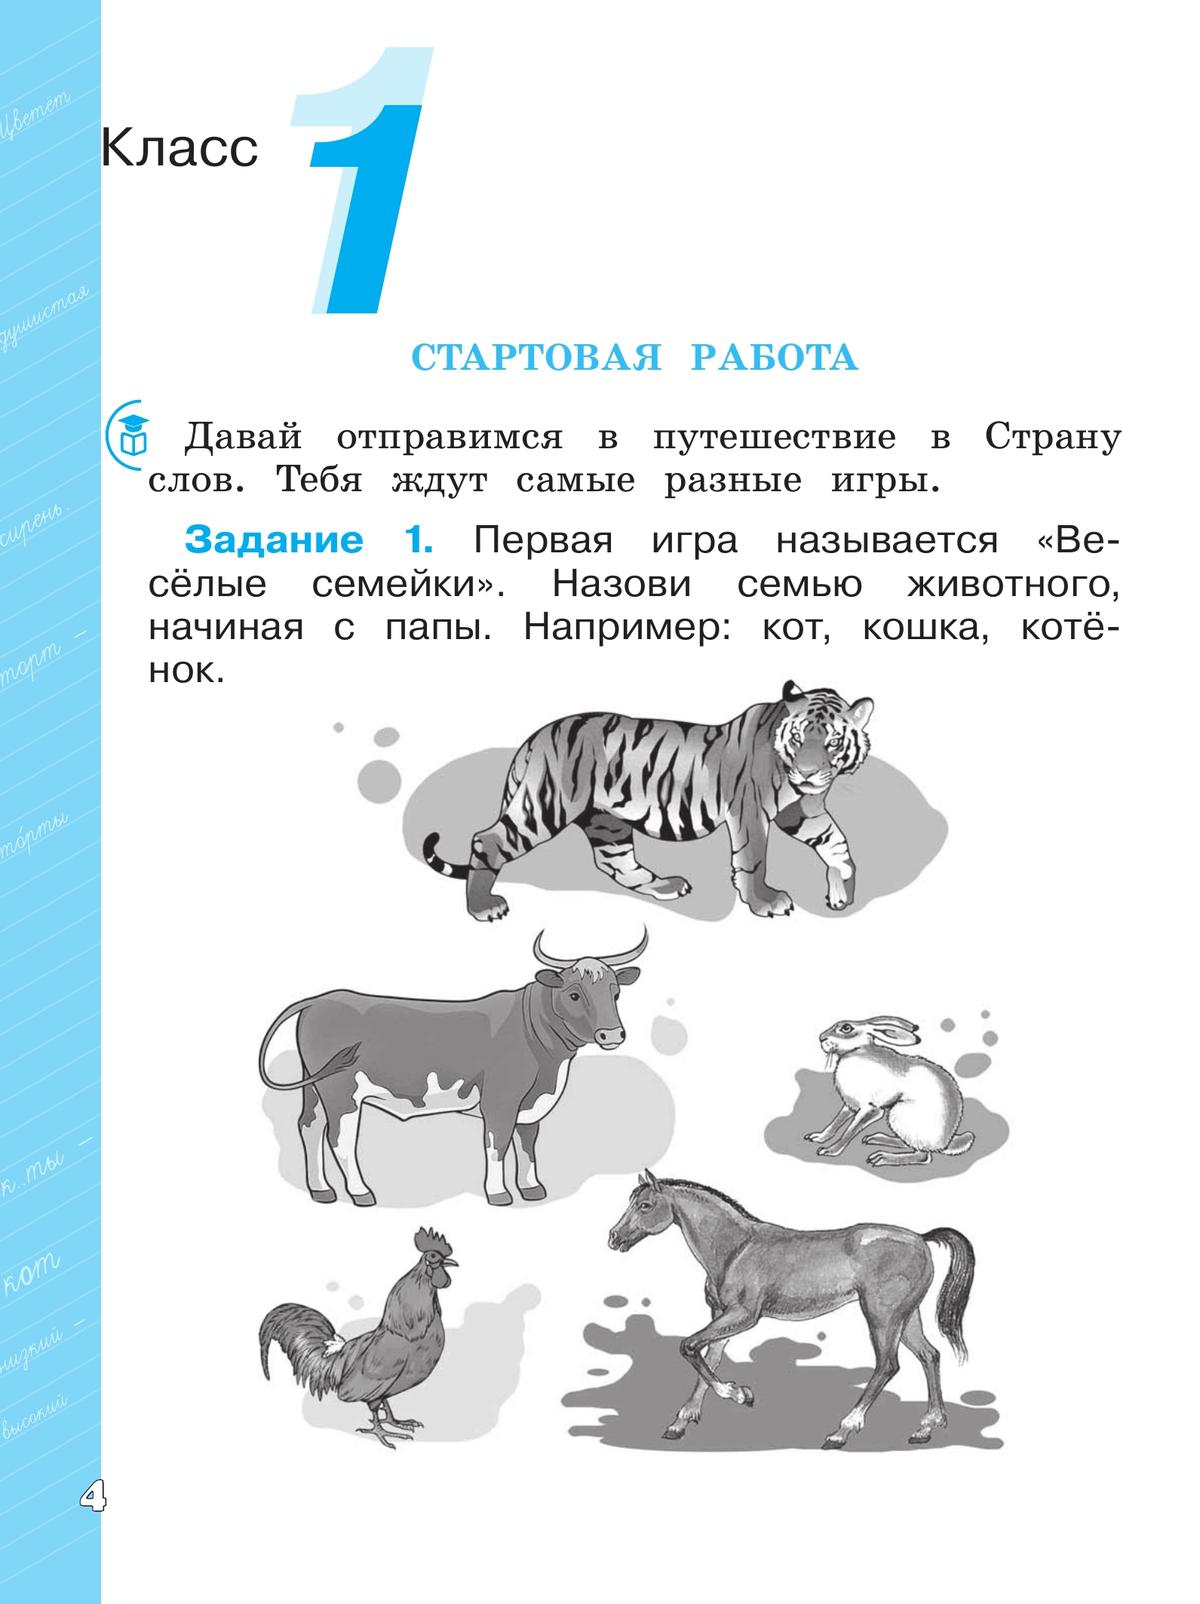 Языковая грамотность. Русский язык. Развитие. Диагностика. 1-2 классы 7